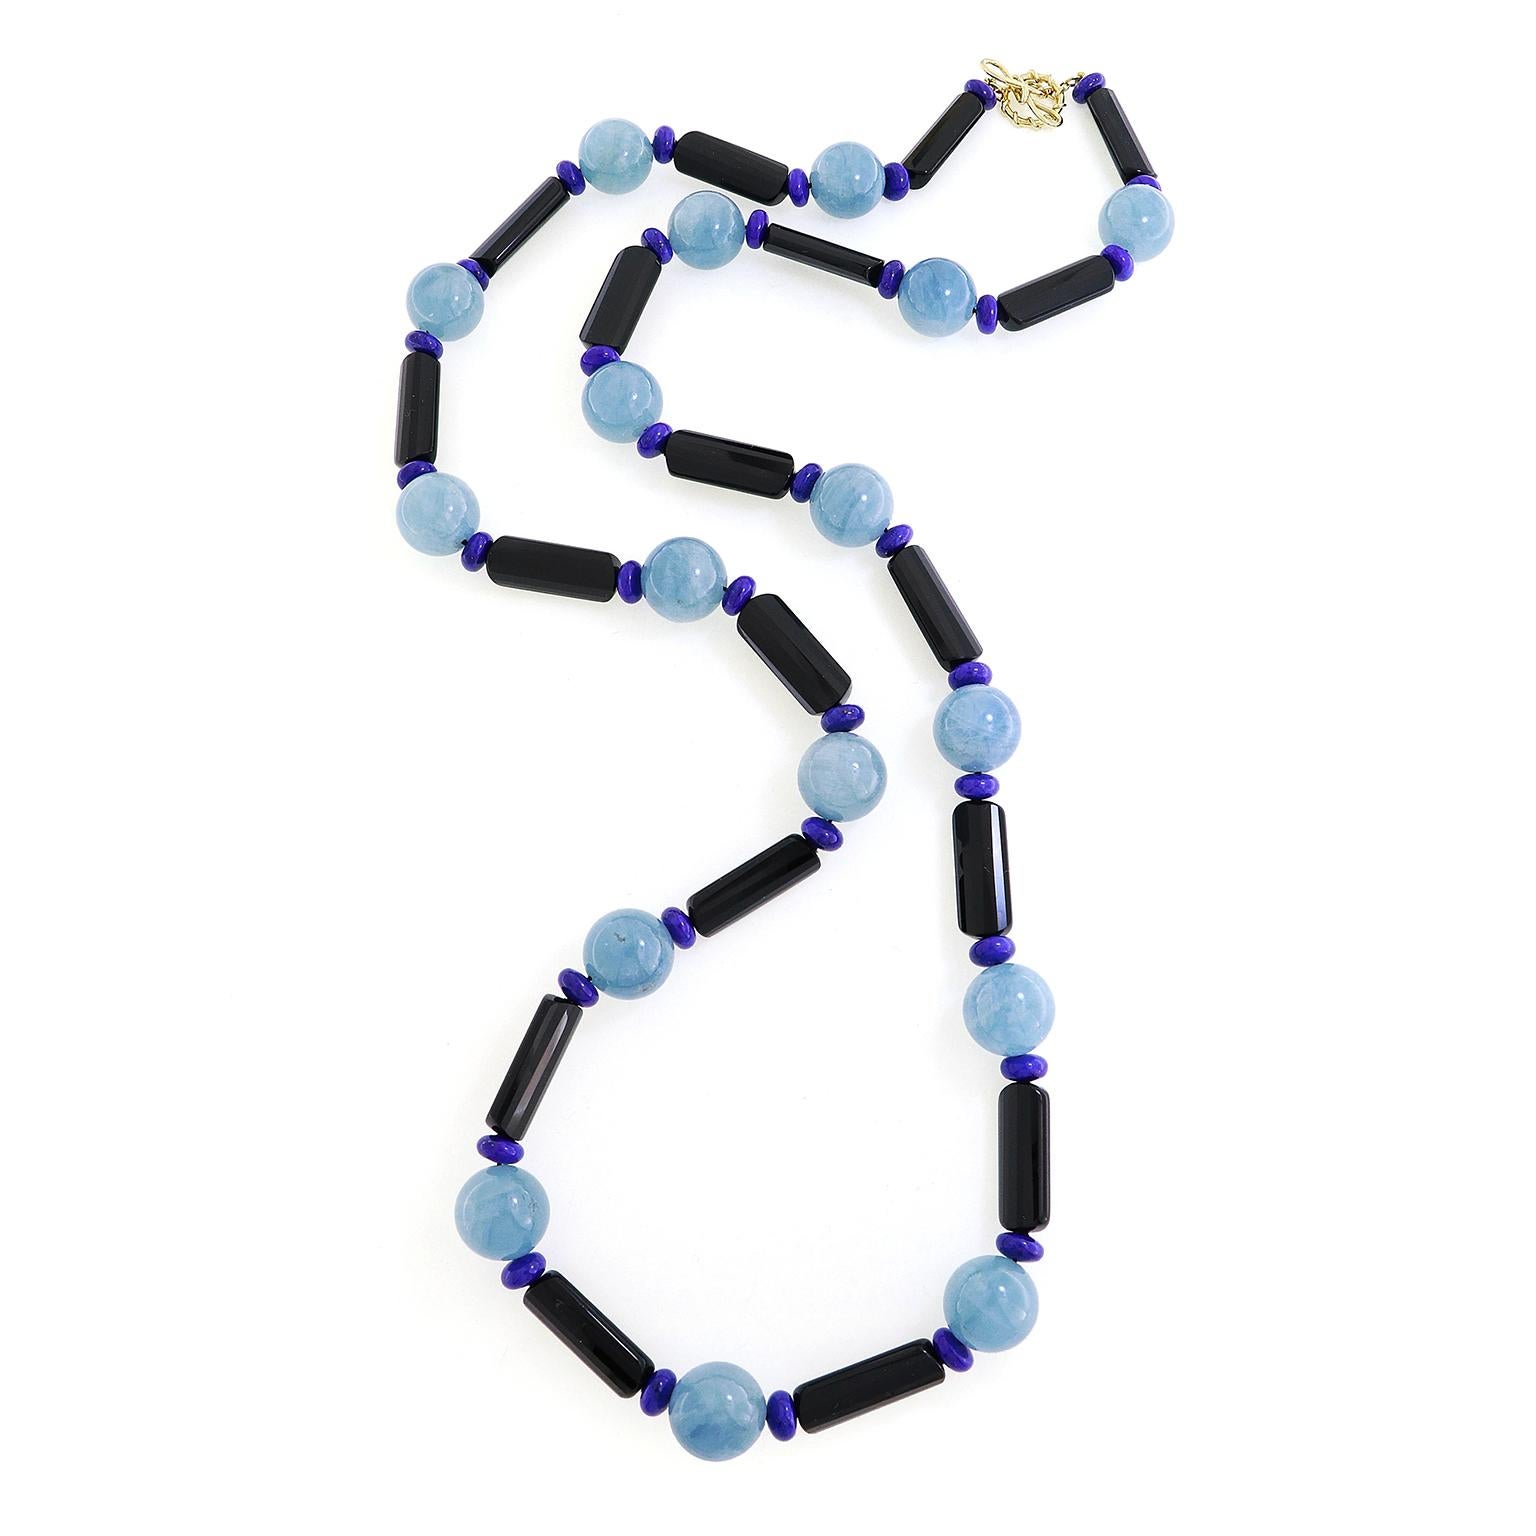 Drei Edelsteine repräsentieren ein Spektrum von Farbtönen für diese Halskette. Schlanke schwarze Onyxzylinder werden mit Lapislazuli-Rondellen kombiniert. Dazwischen befinden sich aquamarinfarbene Kugeln. Das Gesamtgewicht der Edelsteine beträgt 17